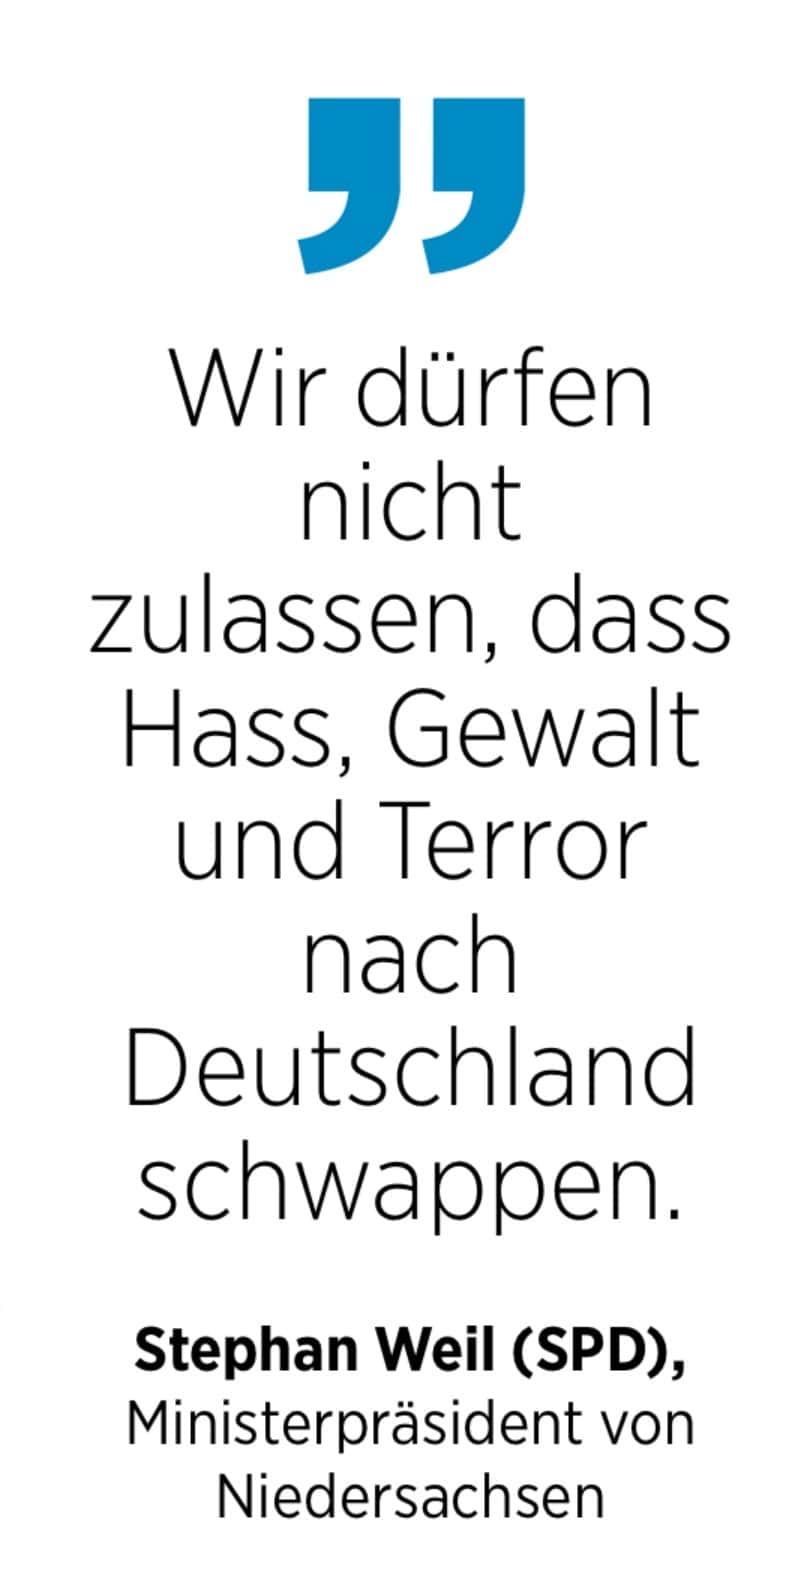 Stephan Weil (SPD), Ministerpräsident von Niedersachsen: Wir dürfen nicht zulassen, dass Hass, Gewalt und Terror nach Deutschland schwappen.